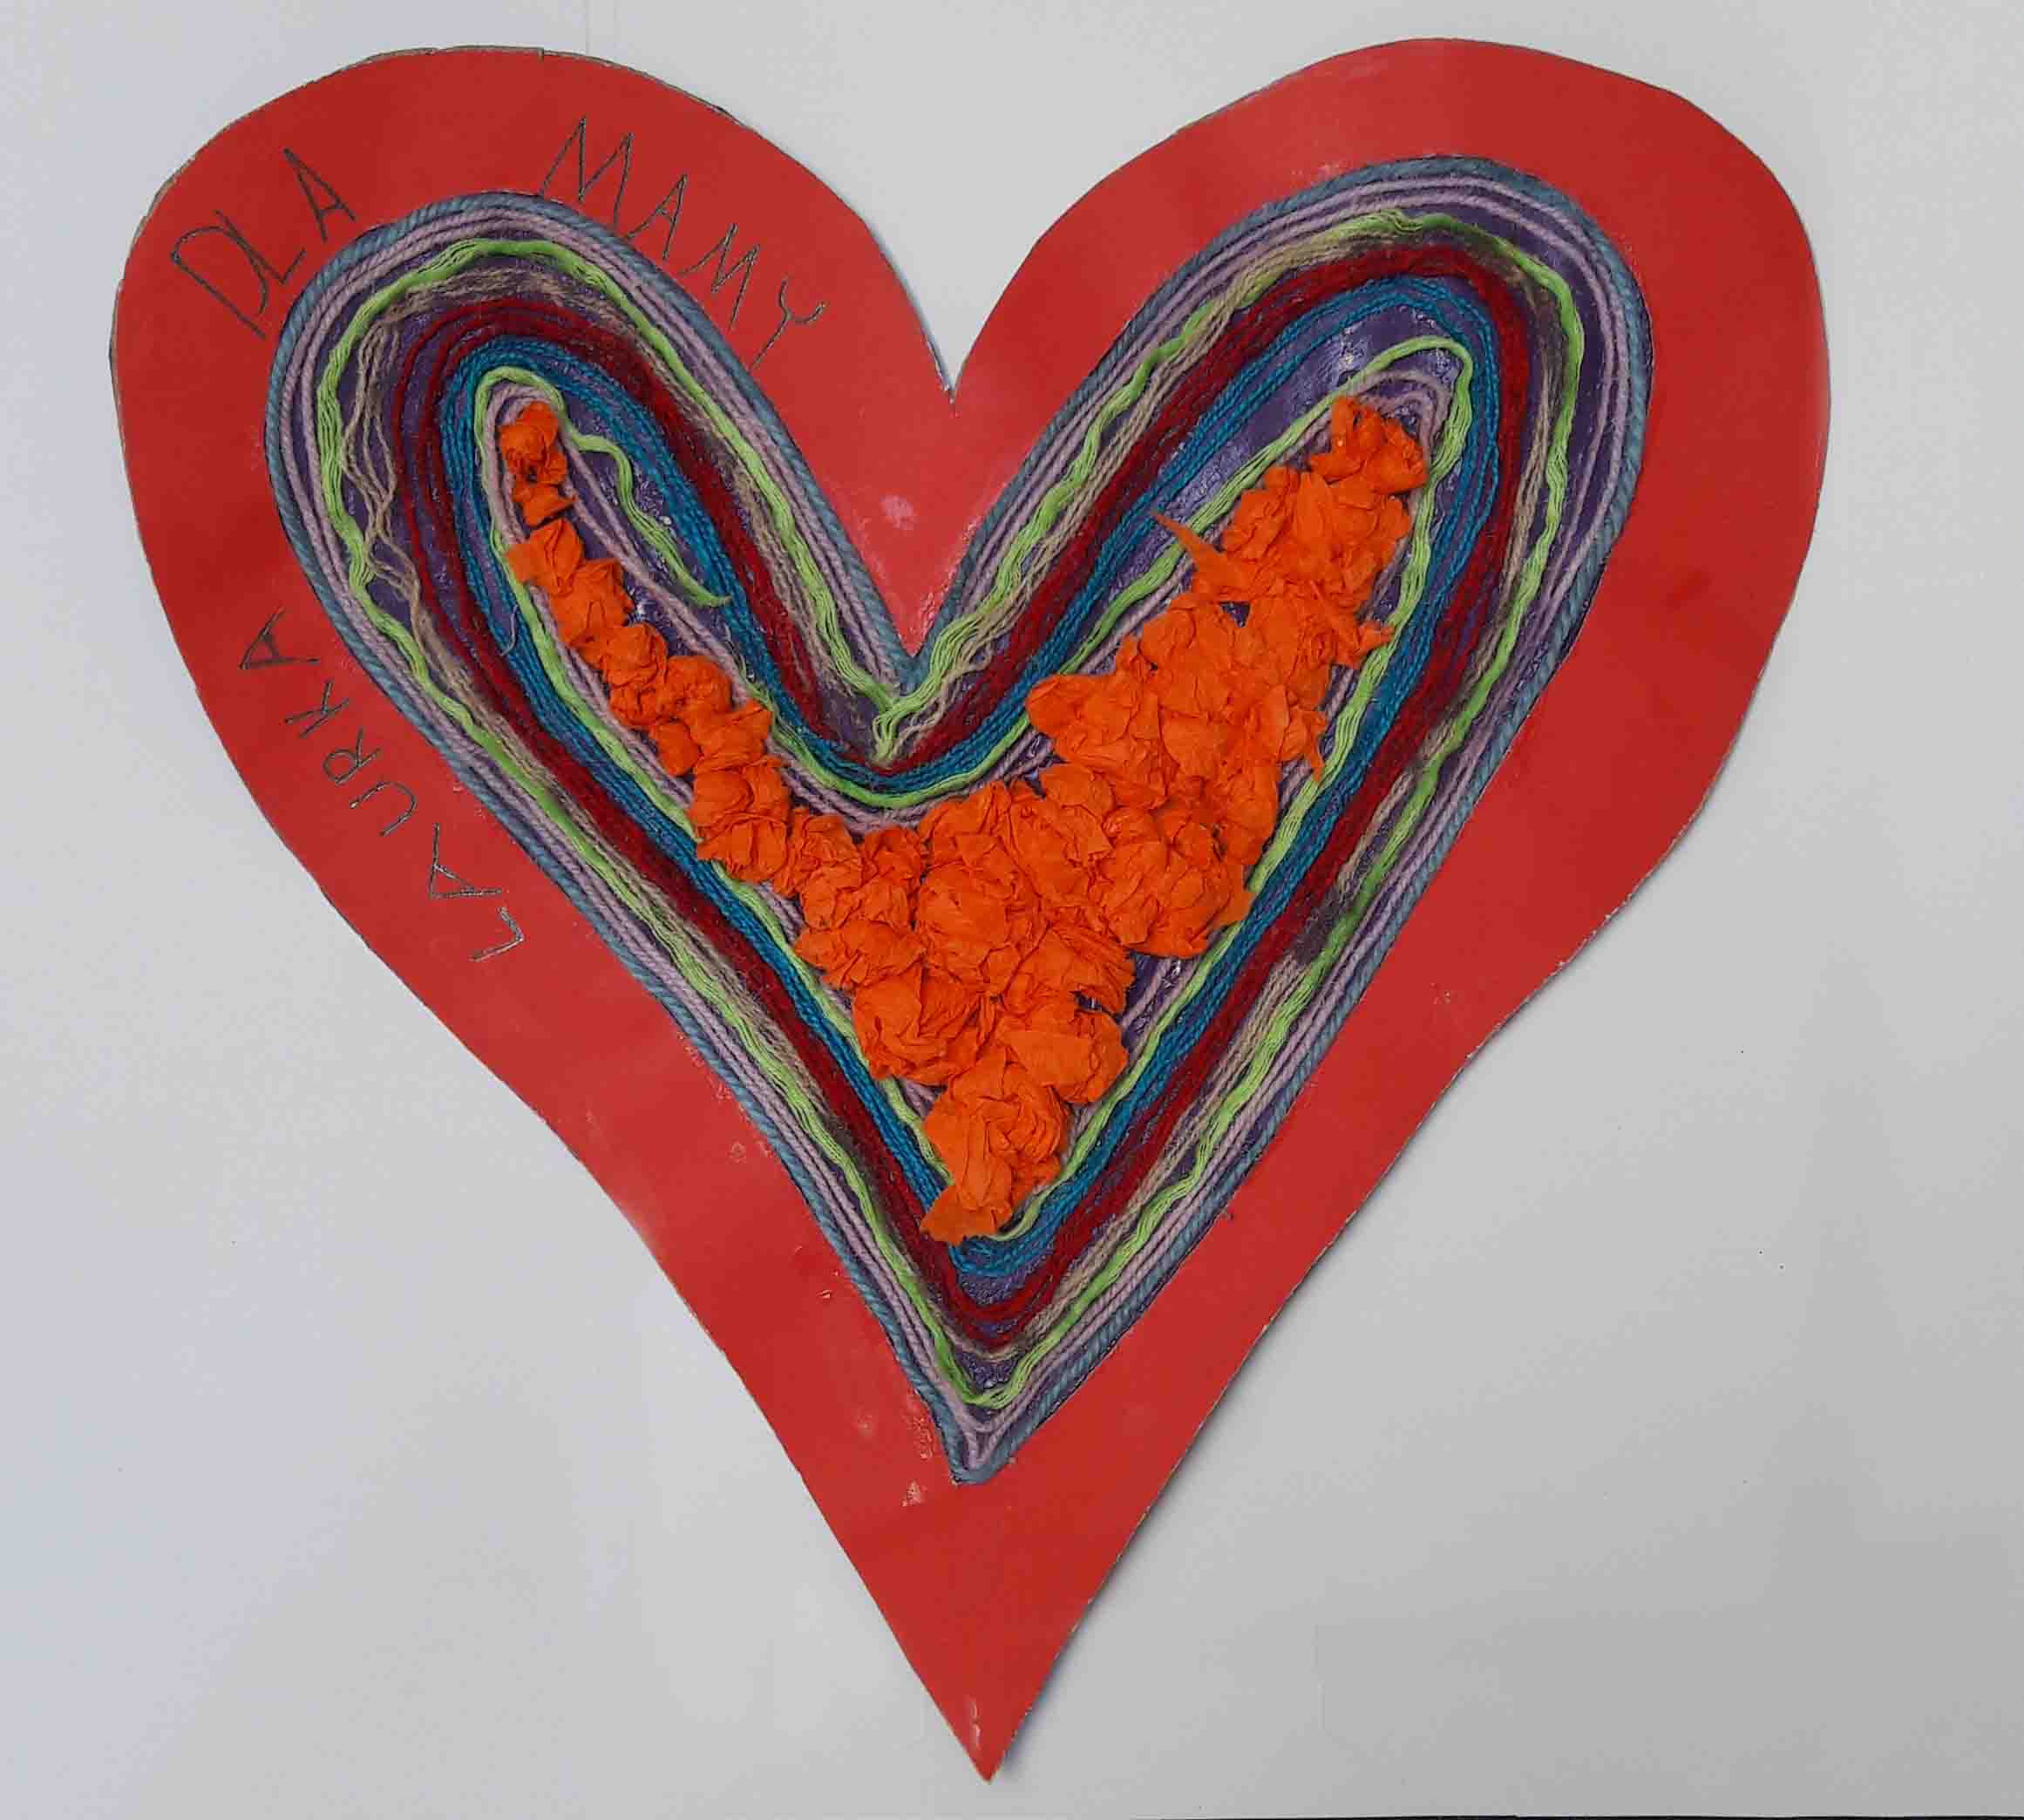 serce z czerwonej kartki w środku którego w kształt serca ułożone są kolorowe sznurki i bibuła